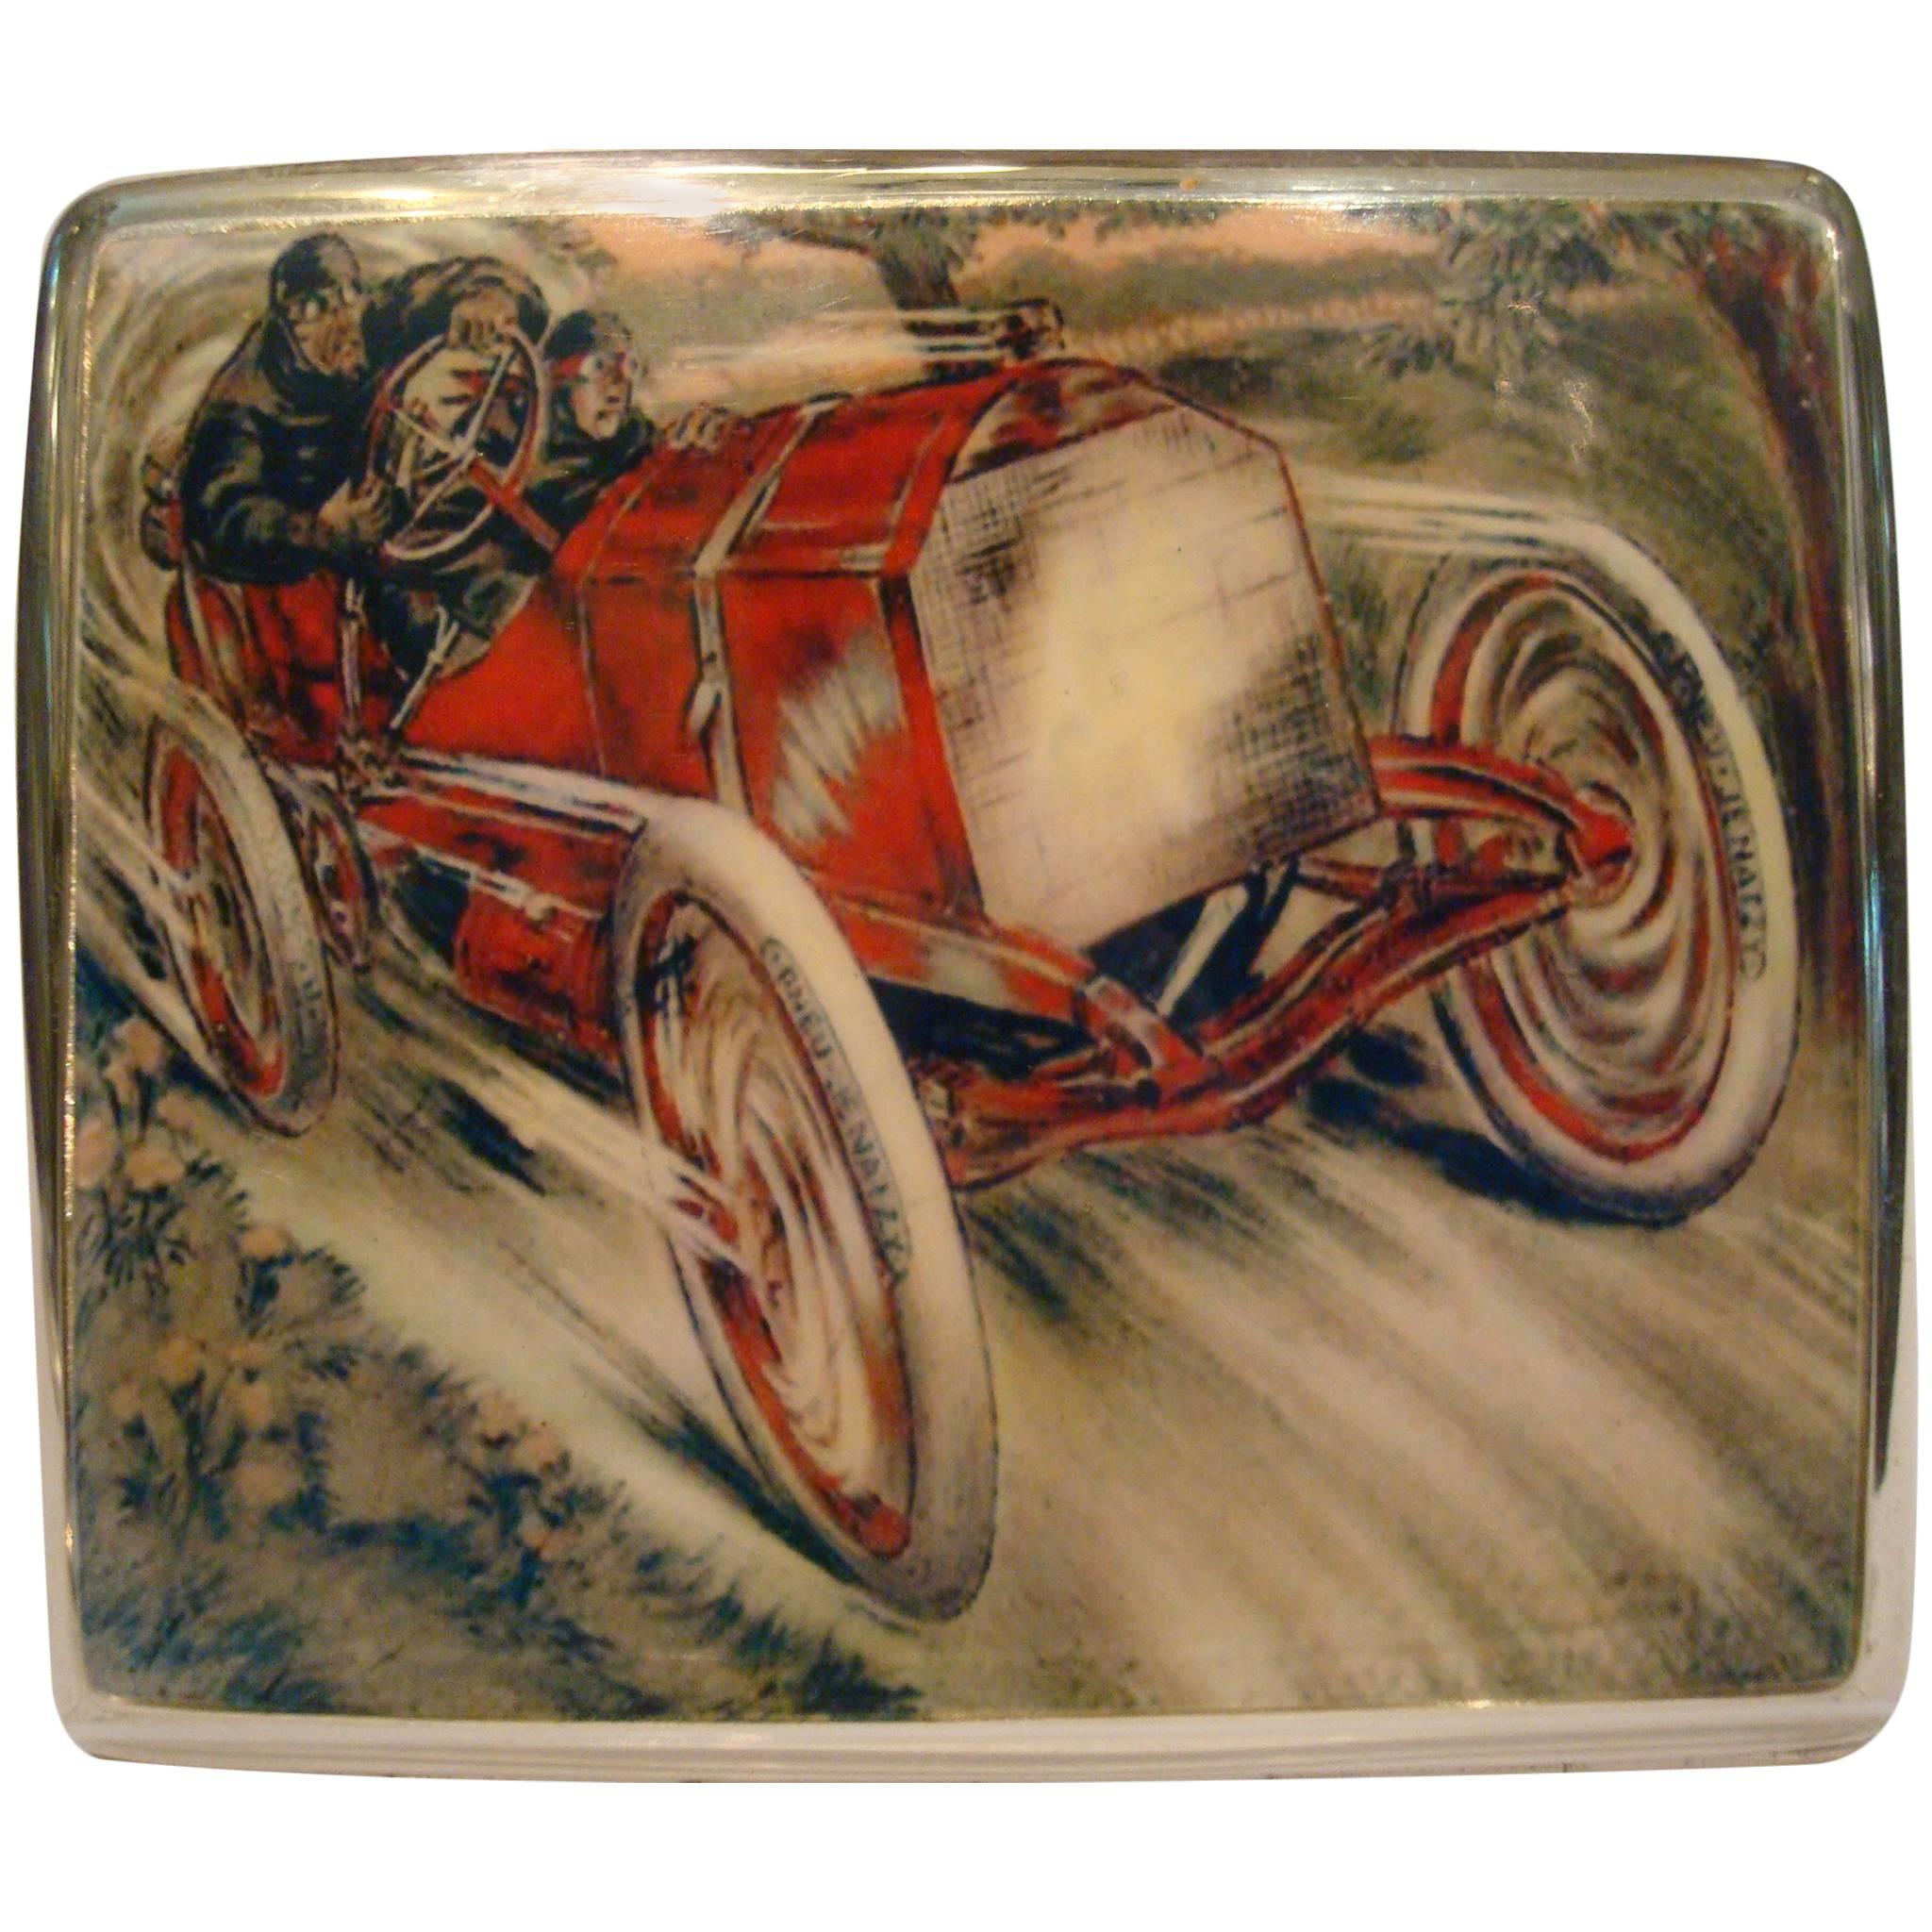 Racing Chain Car 'Pneus Jenatzy' Silver and Enamel Cigarette Case, circa 1903